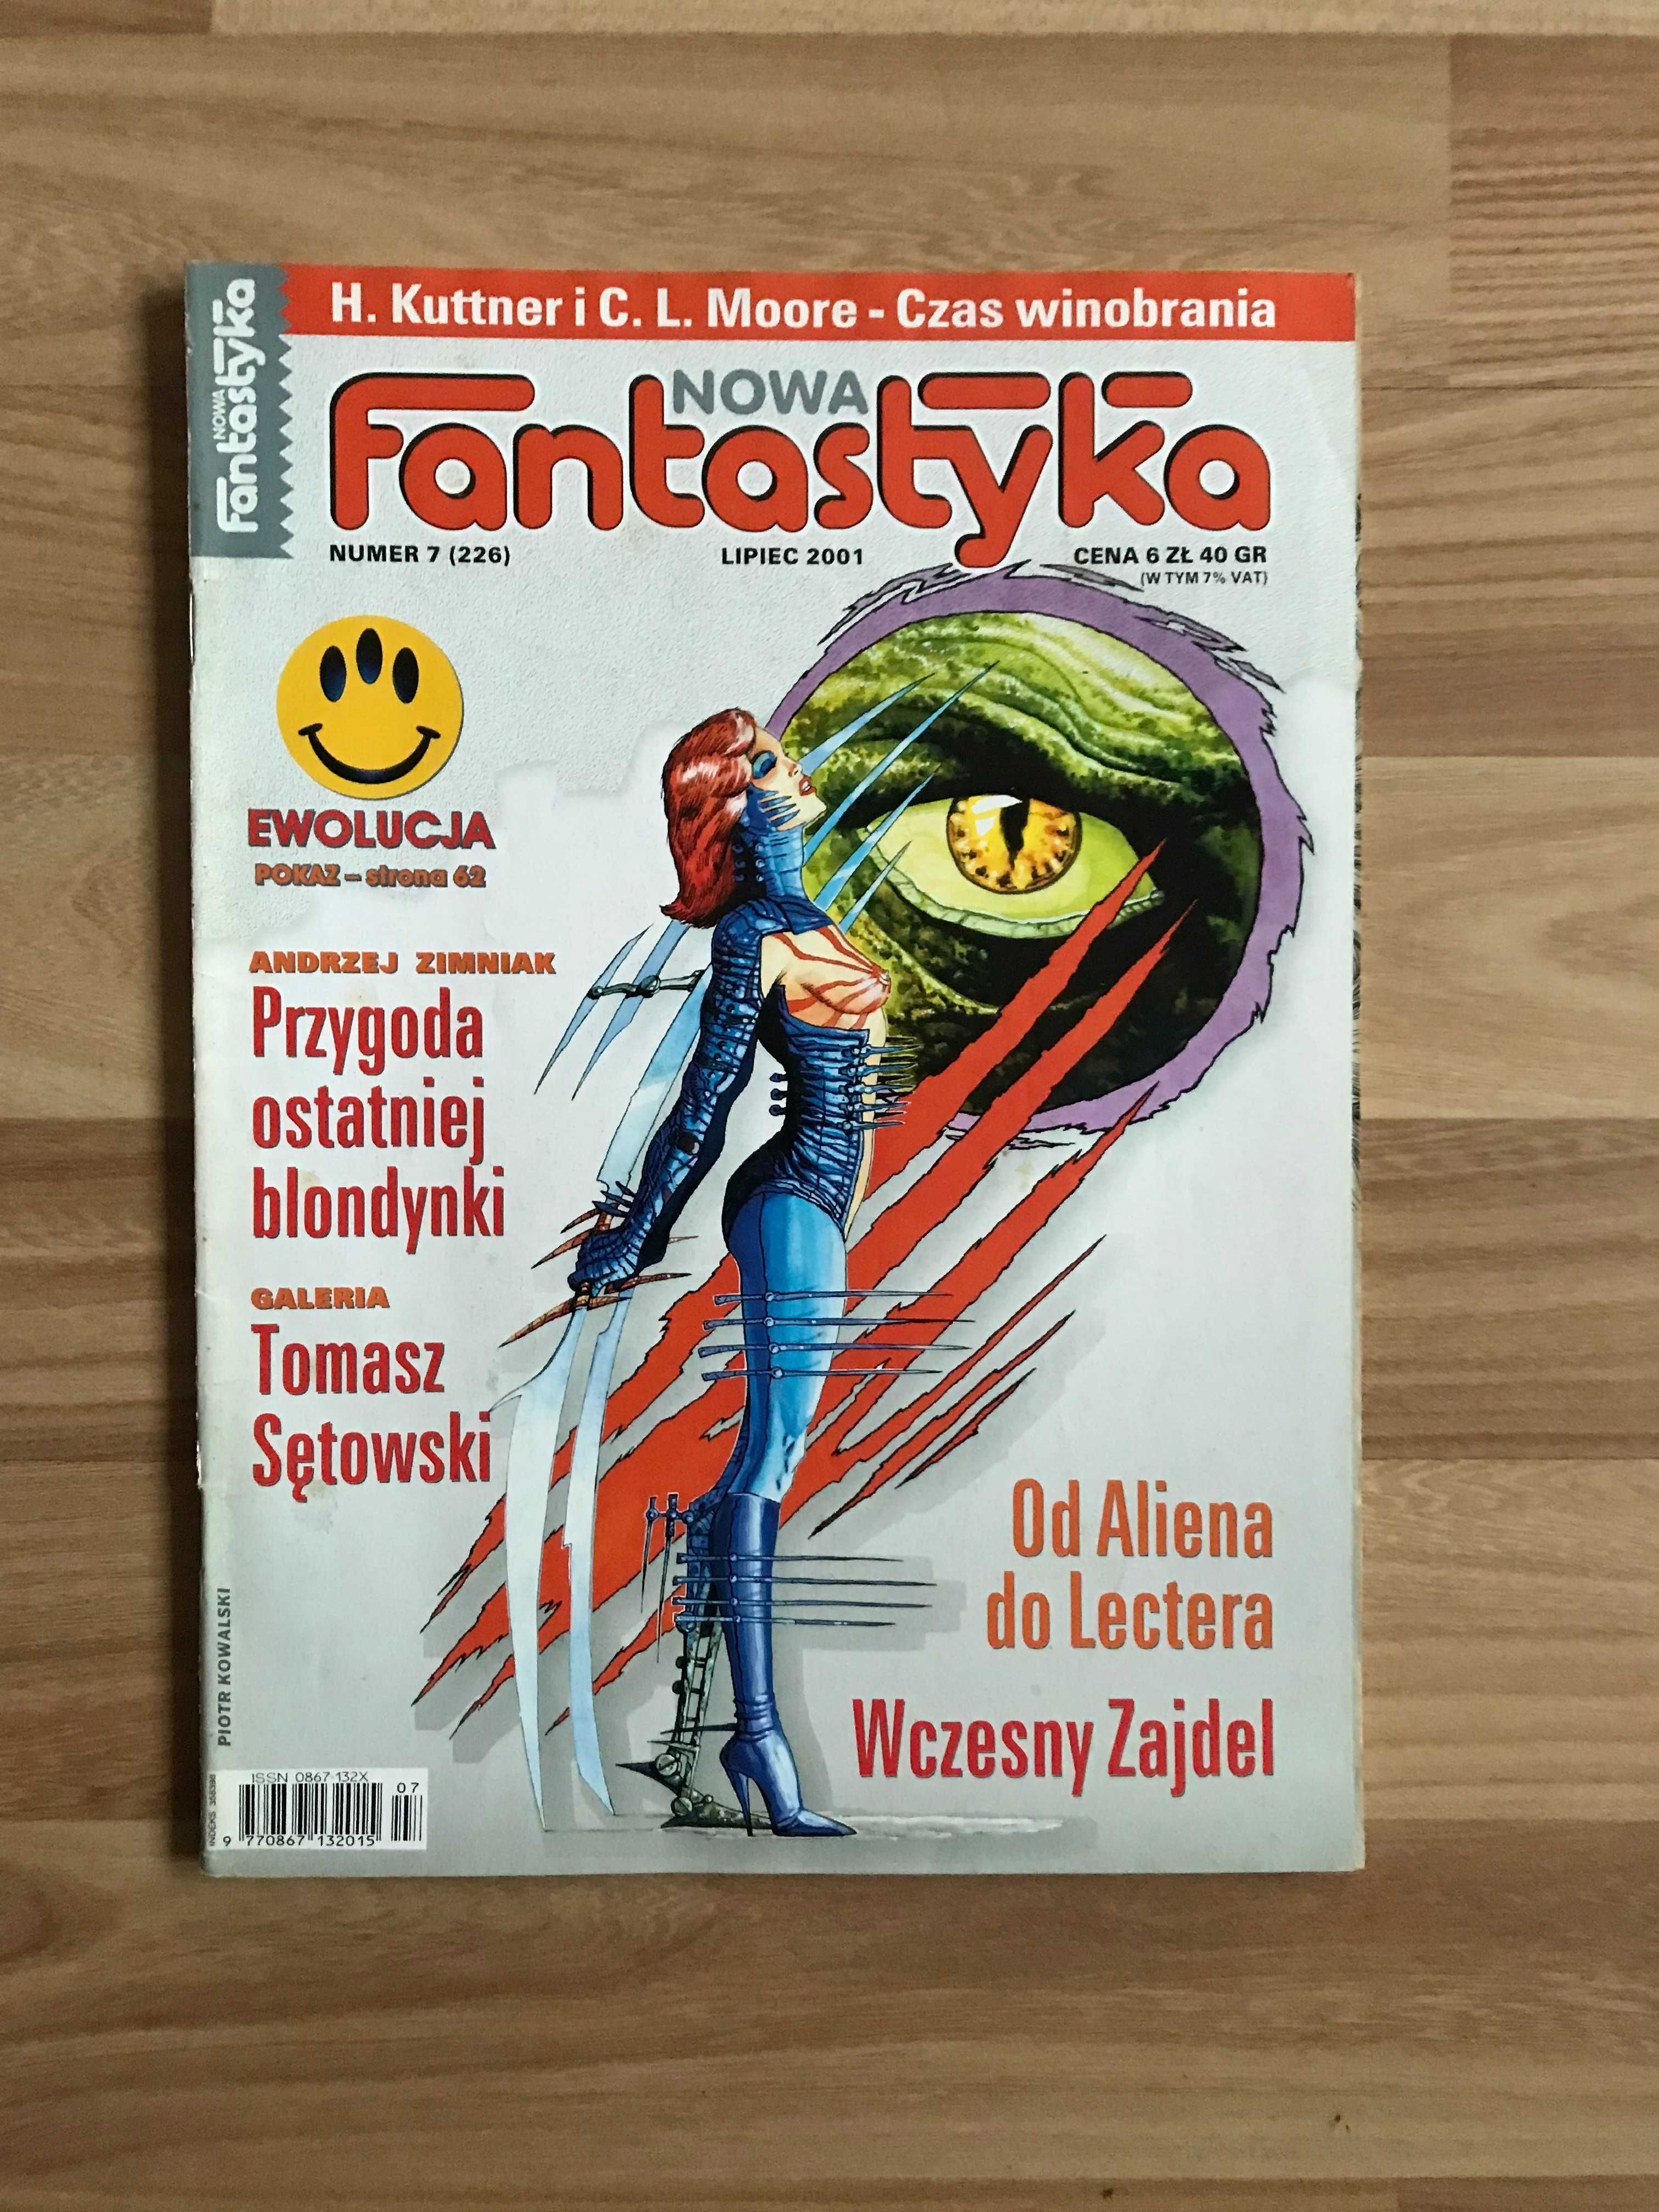 Nowa Fantastyka 7 (226) 2001 Henry Kuttner Shrek Alien Hannibal Lecter